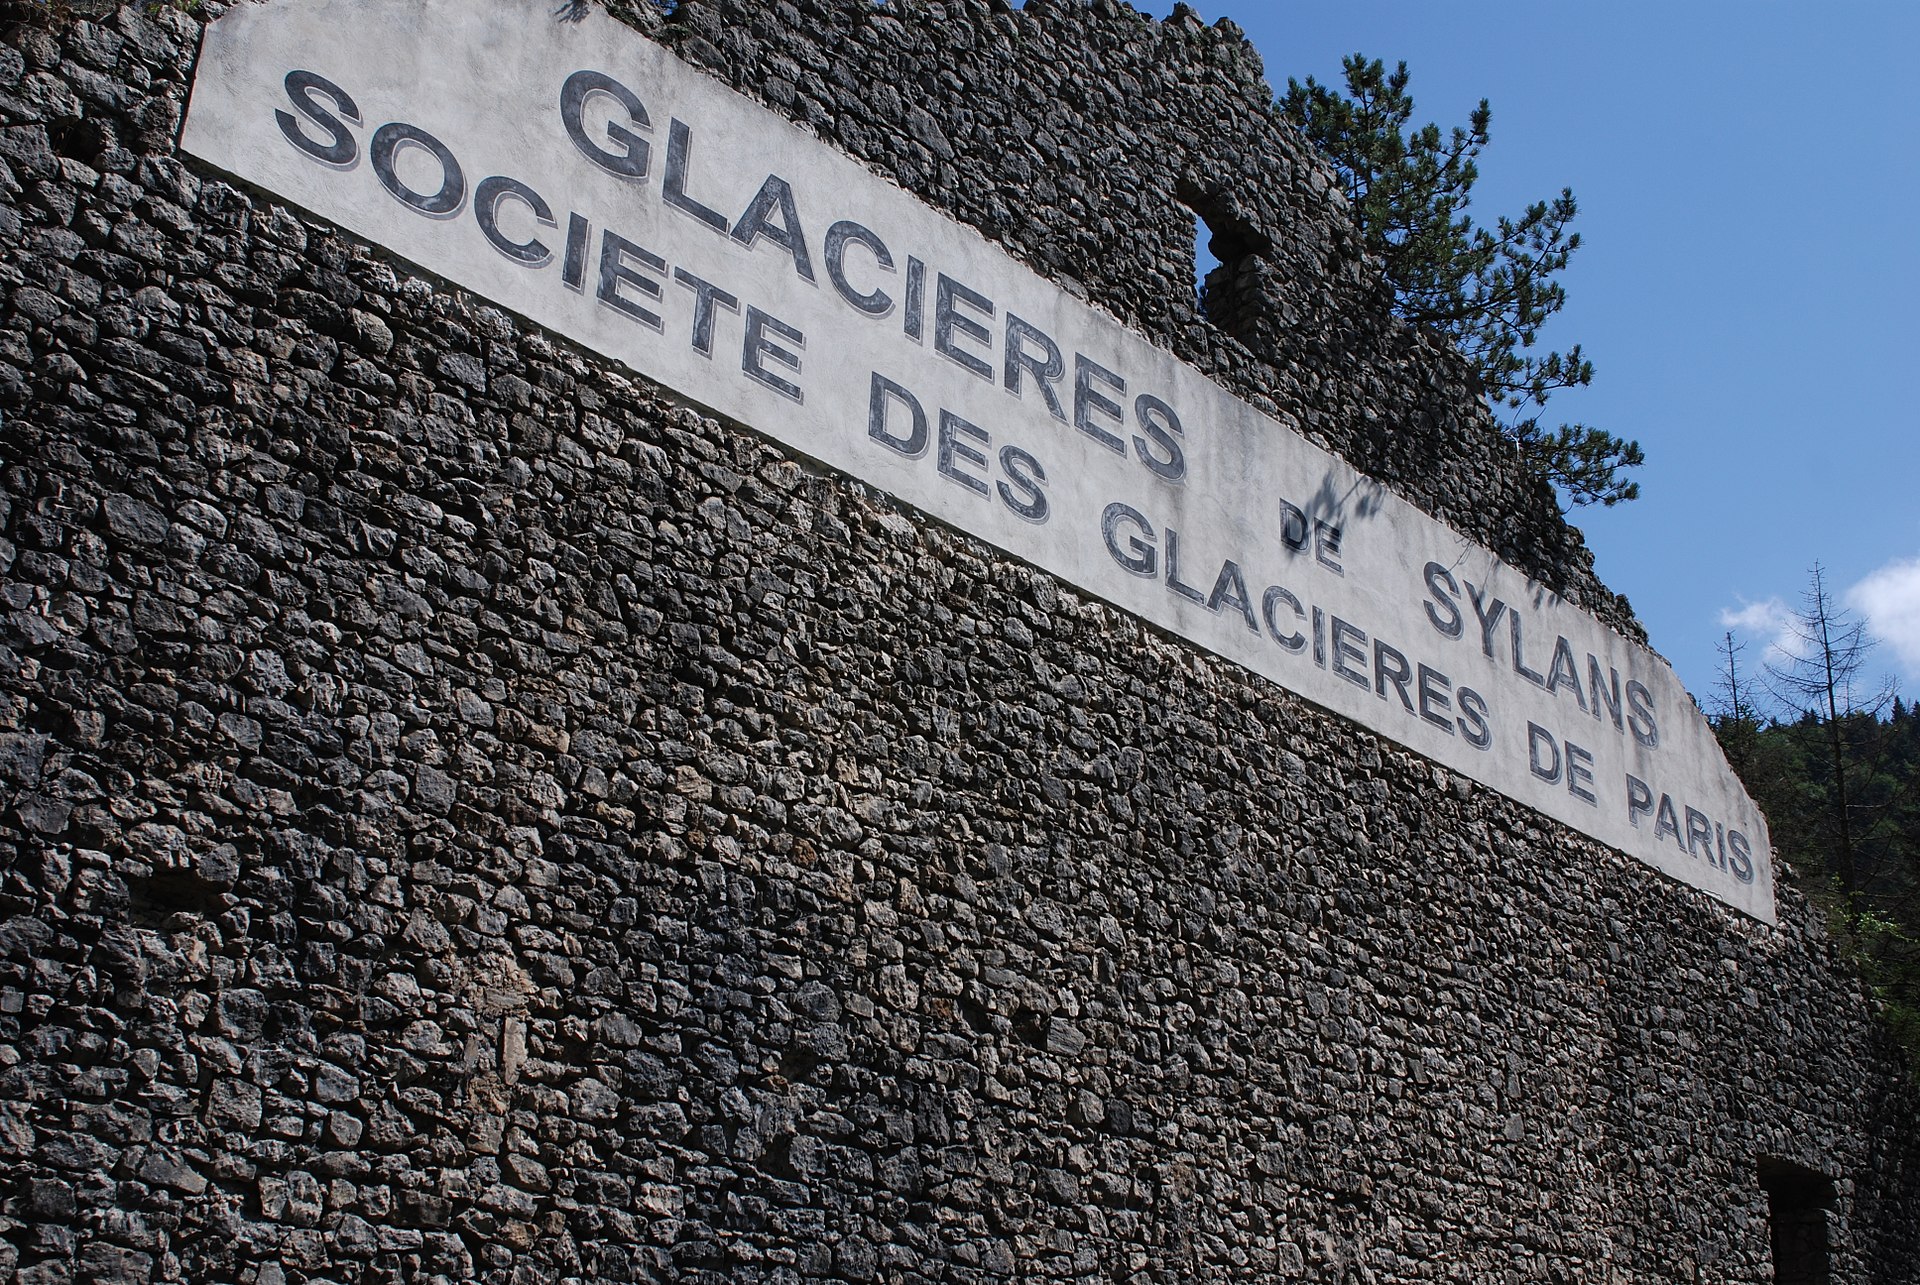 Glacière de Sylans & Musée de la Résistance de Nantua